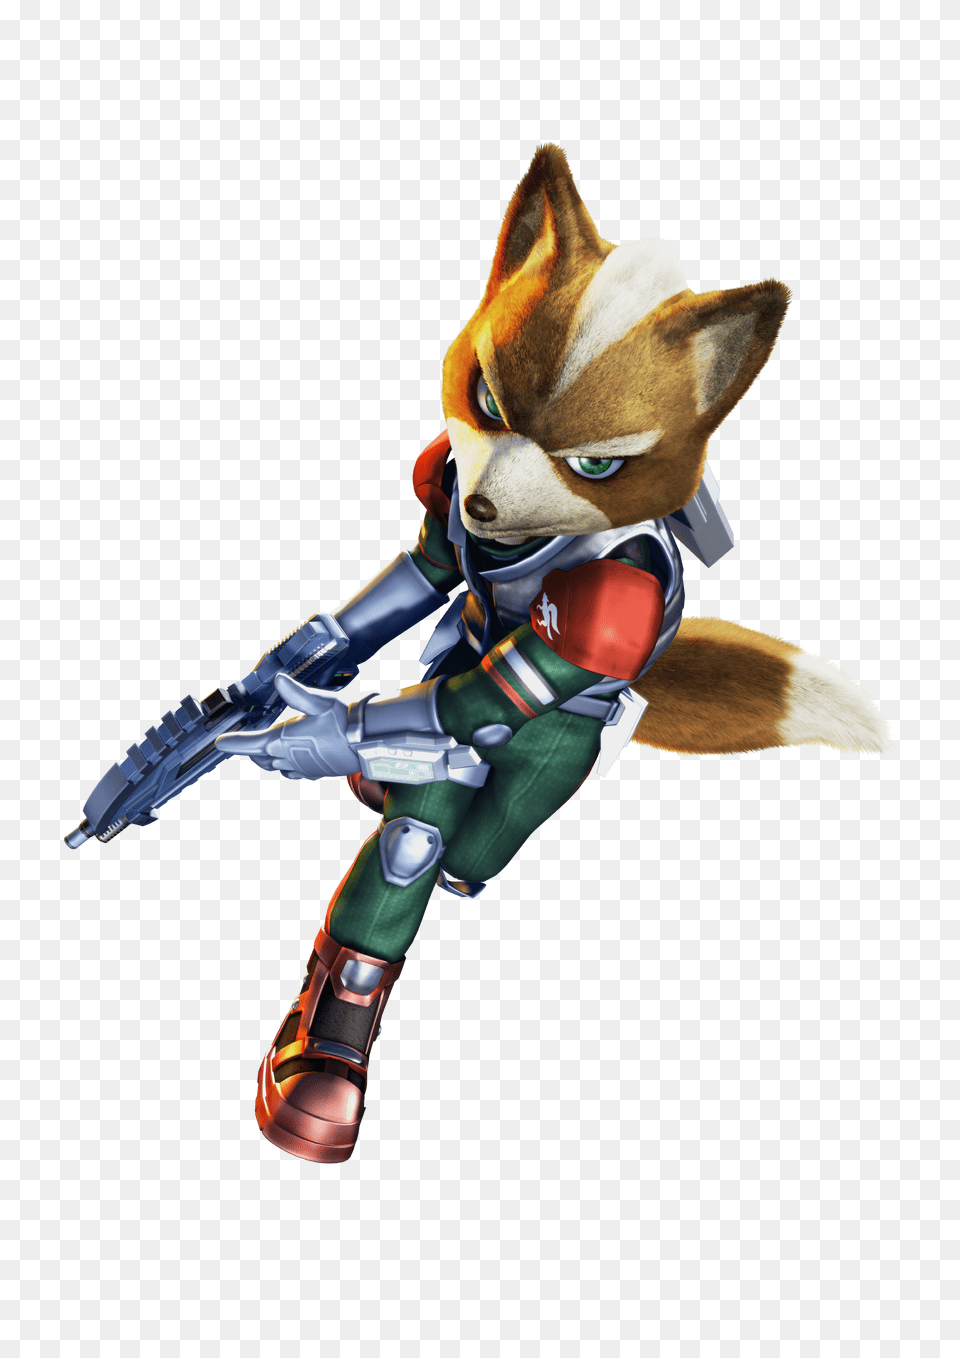 Star Fox Assault Render Star Fox Assault Fox, Figurine, Toy, Clothing, Glove Png